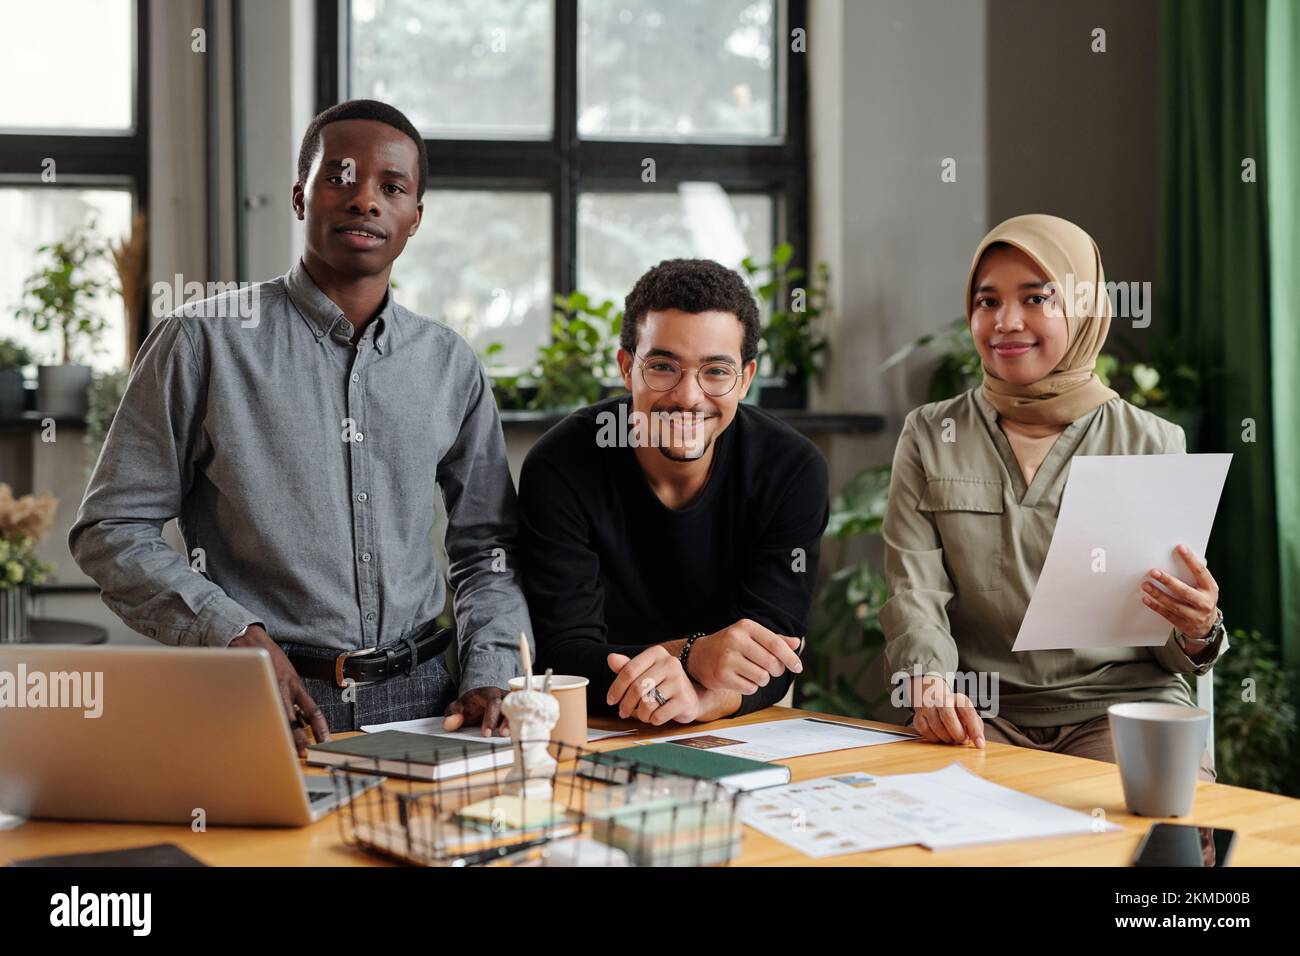 Gruppe von drei glücklichen jungen interkulturellen Mitarbeitern in Freizeitkleidung, die mit Dokumenten und Laptop vor die Kamera schauen, während sie am Arbeitsplatz stehen Stockfoto